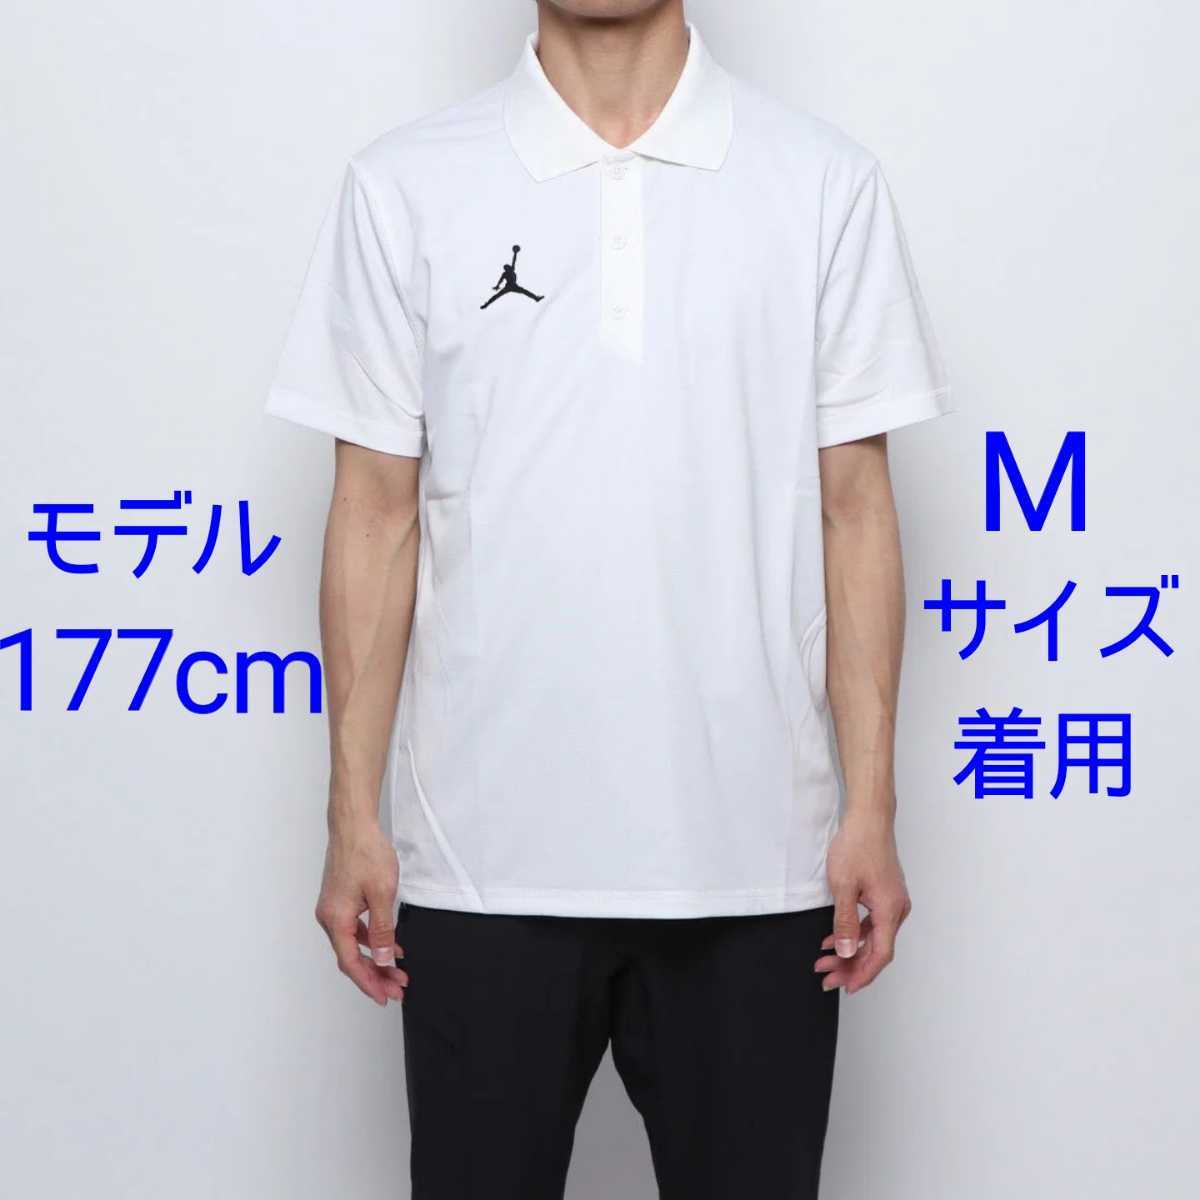 新品 Mサイズ エアジョーダン 半袖ポロシャツ USサイズS ホワイト 白色 AIR JORDAN1 メンズ トップス ナイキ NBA ゴルフウェア  Tシャツ